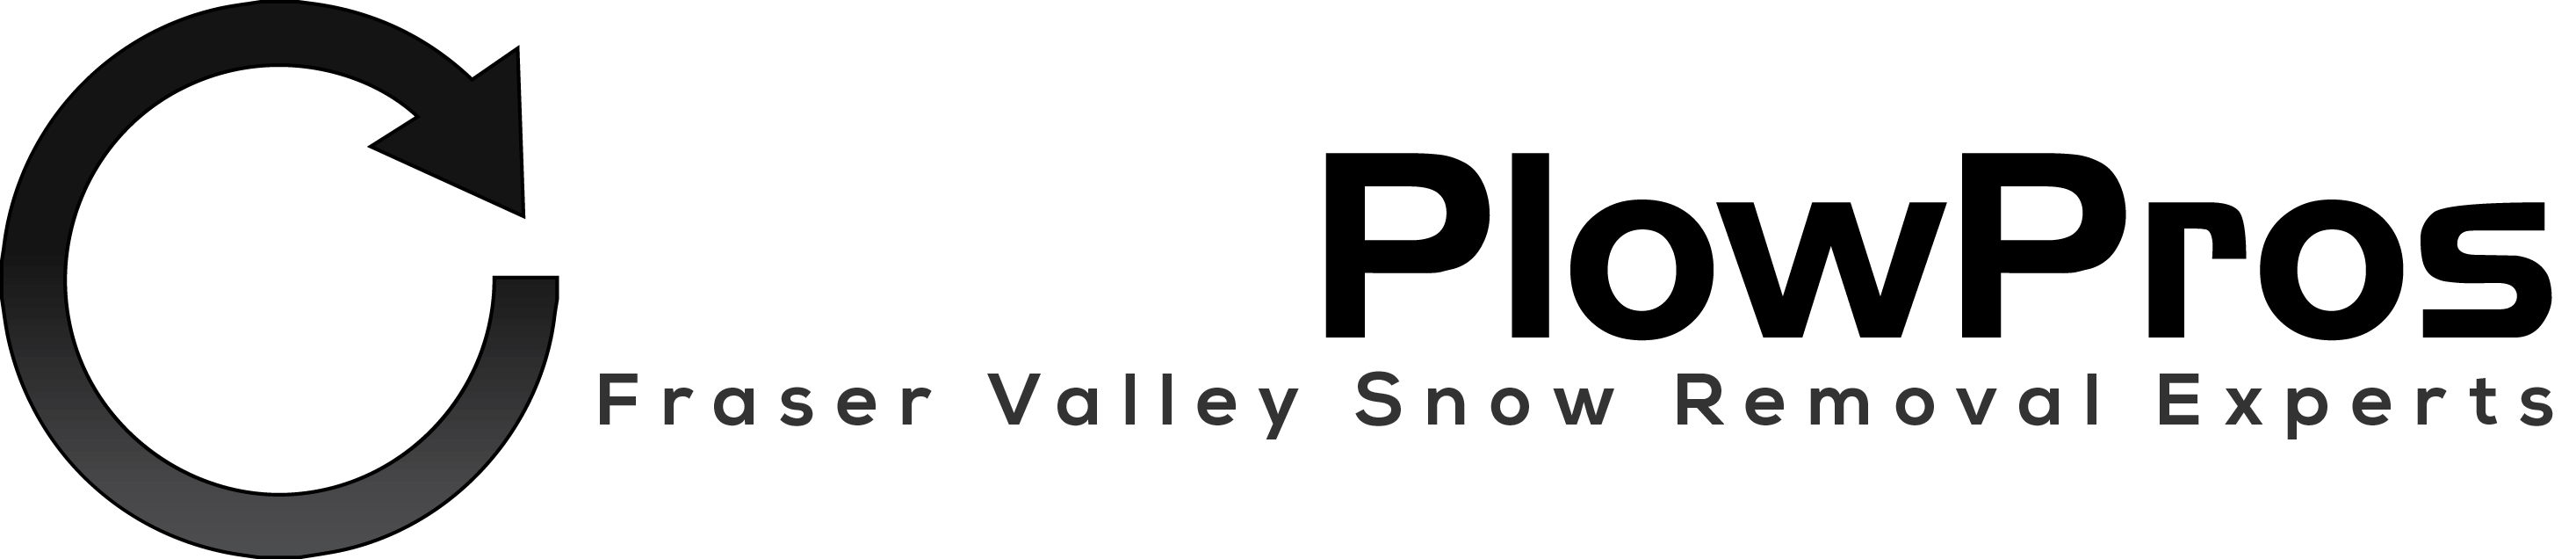 Snow Plow Pros